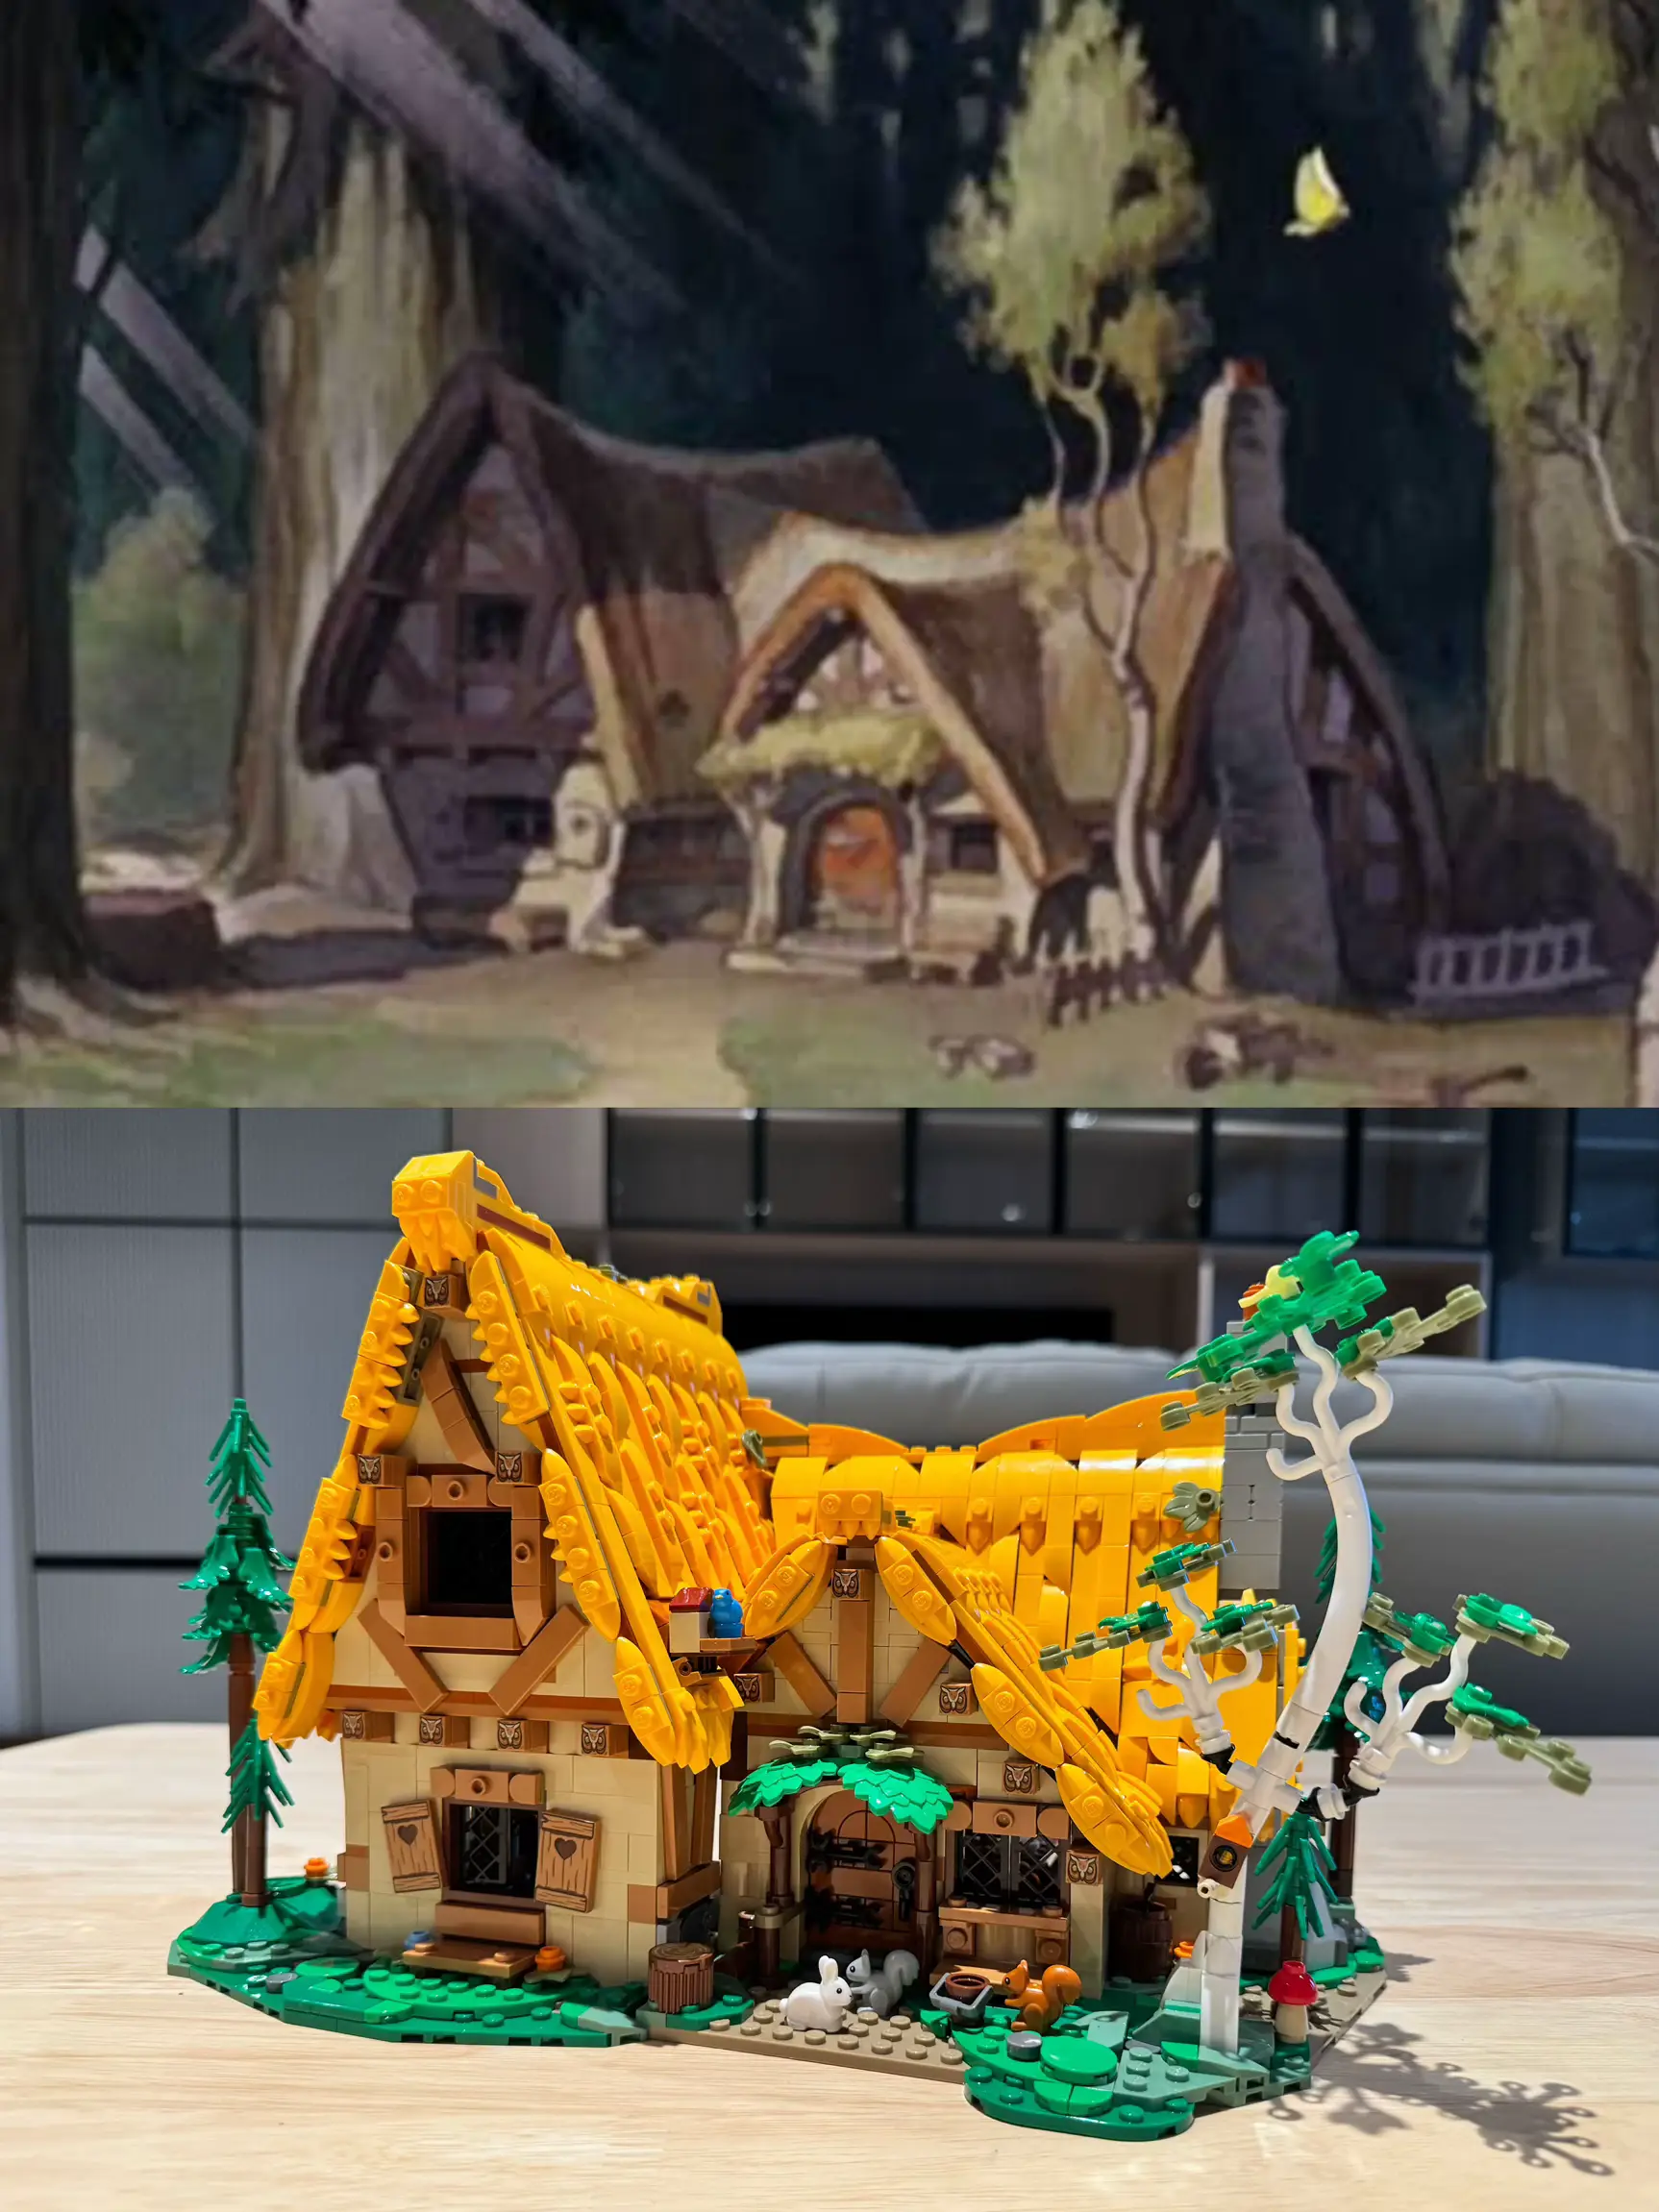 何をしているの!?#3白雪姫から小人小屋を建てる 🍎 | รีวิวให้หมดが ...